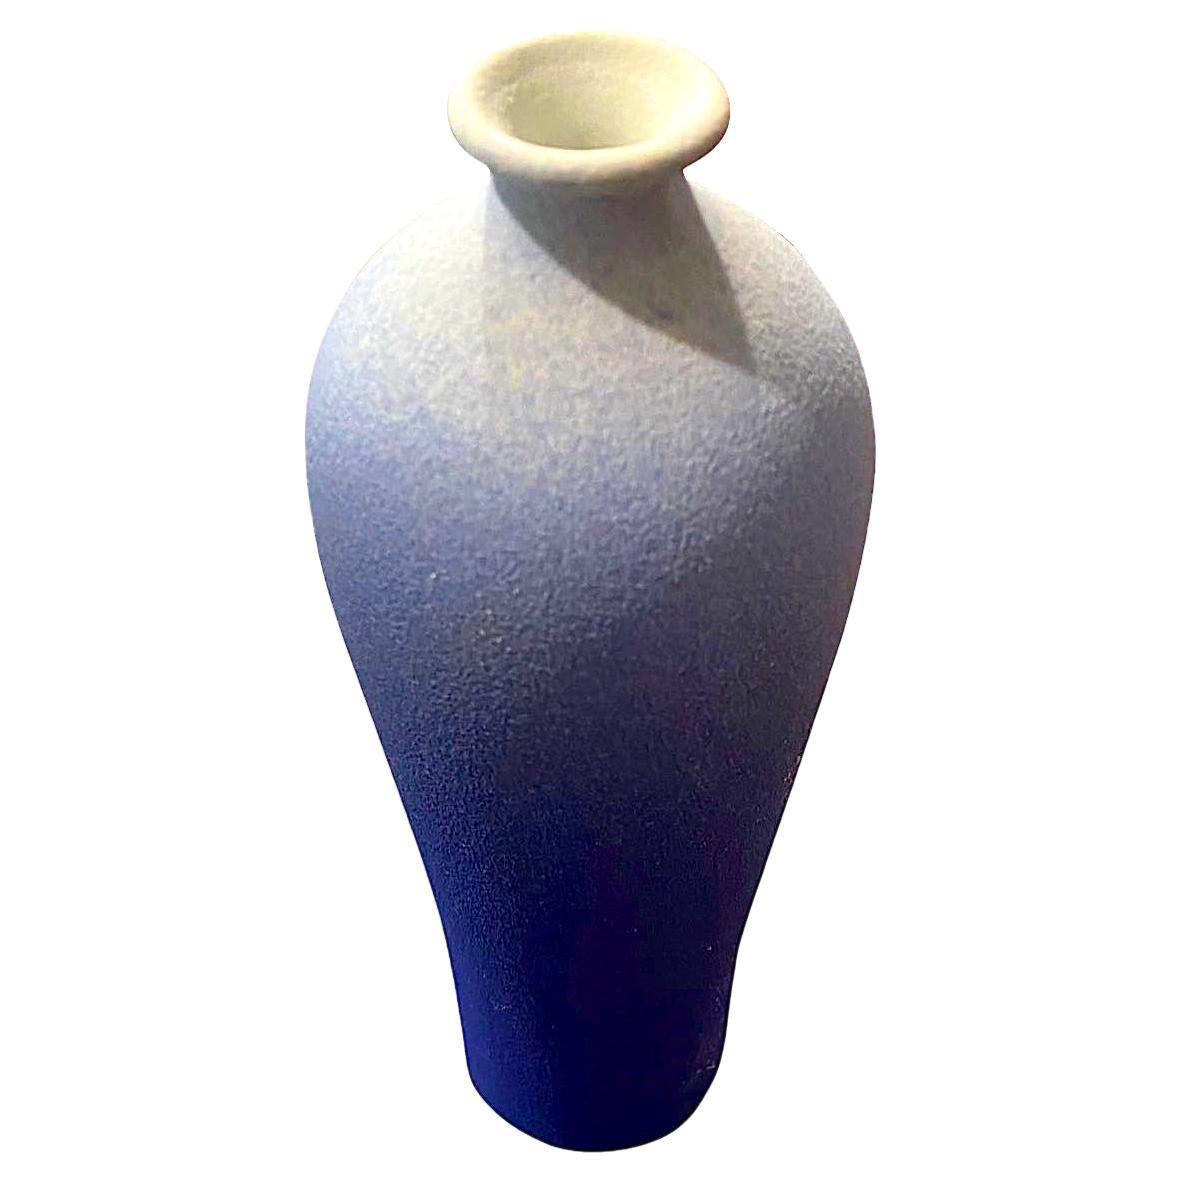 Vase contemporain chinois à glaçage bleu ombre.
Haut de forme arrondie avec ouverture du bec mince.
Fait partie d'une grande collection.